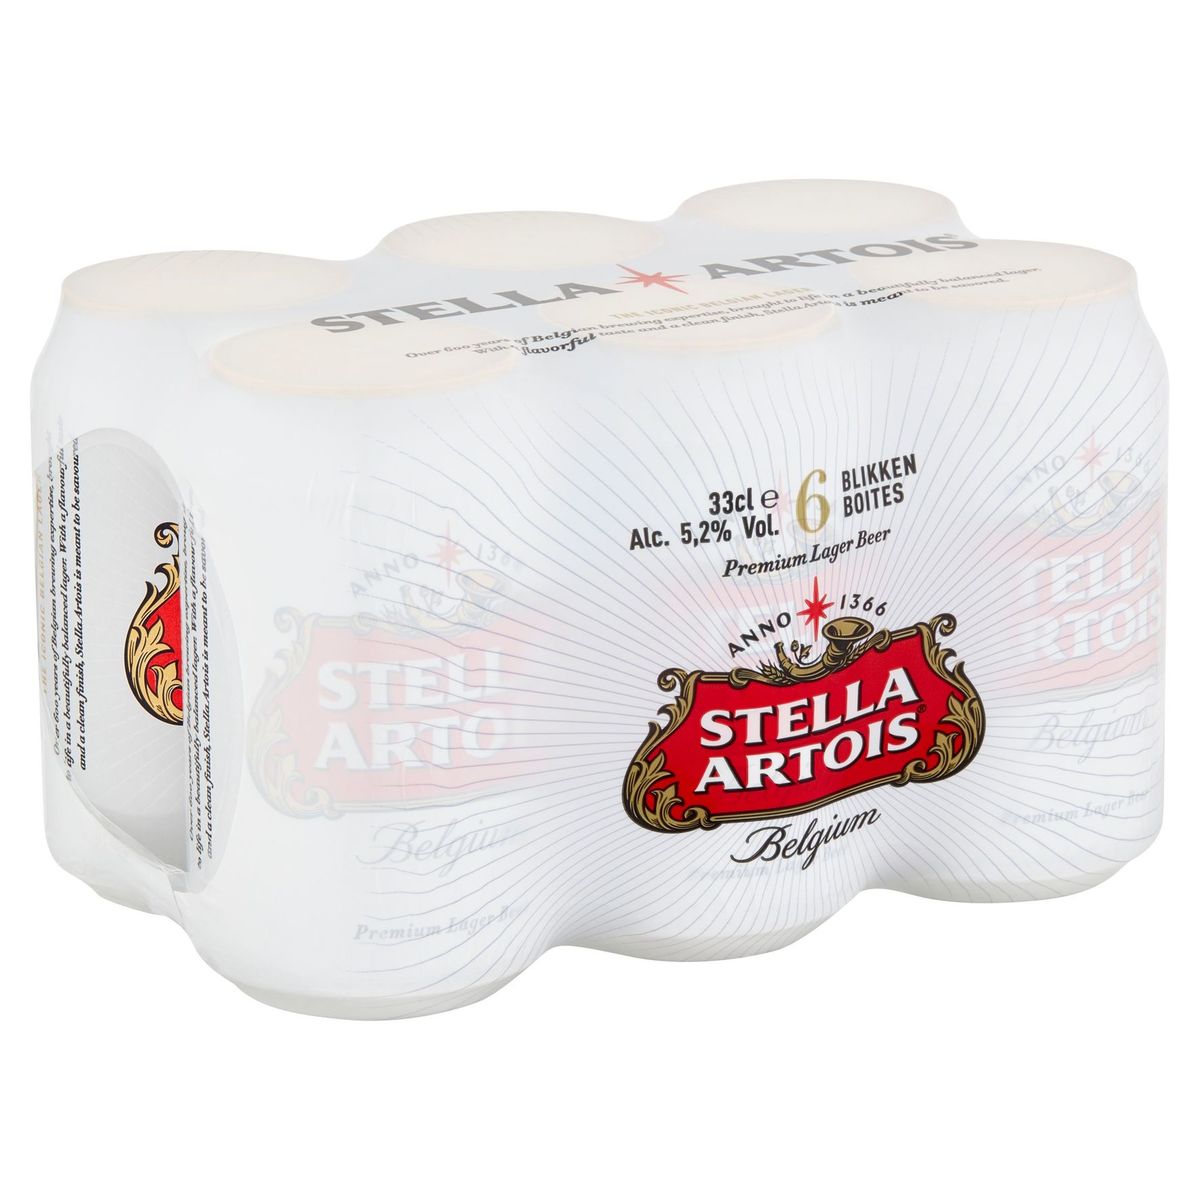 Stella Artois Belgium Premium Lager Beer Cannettes 6 x 33 cl